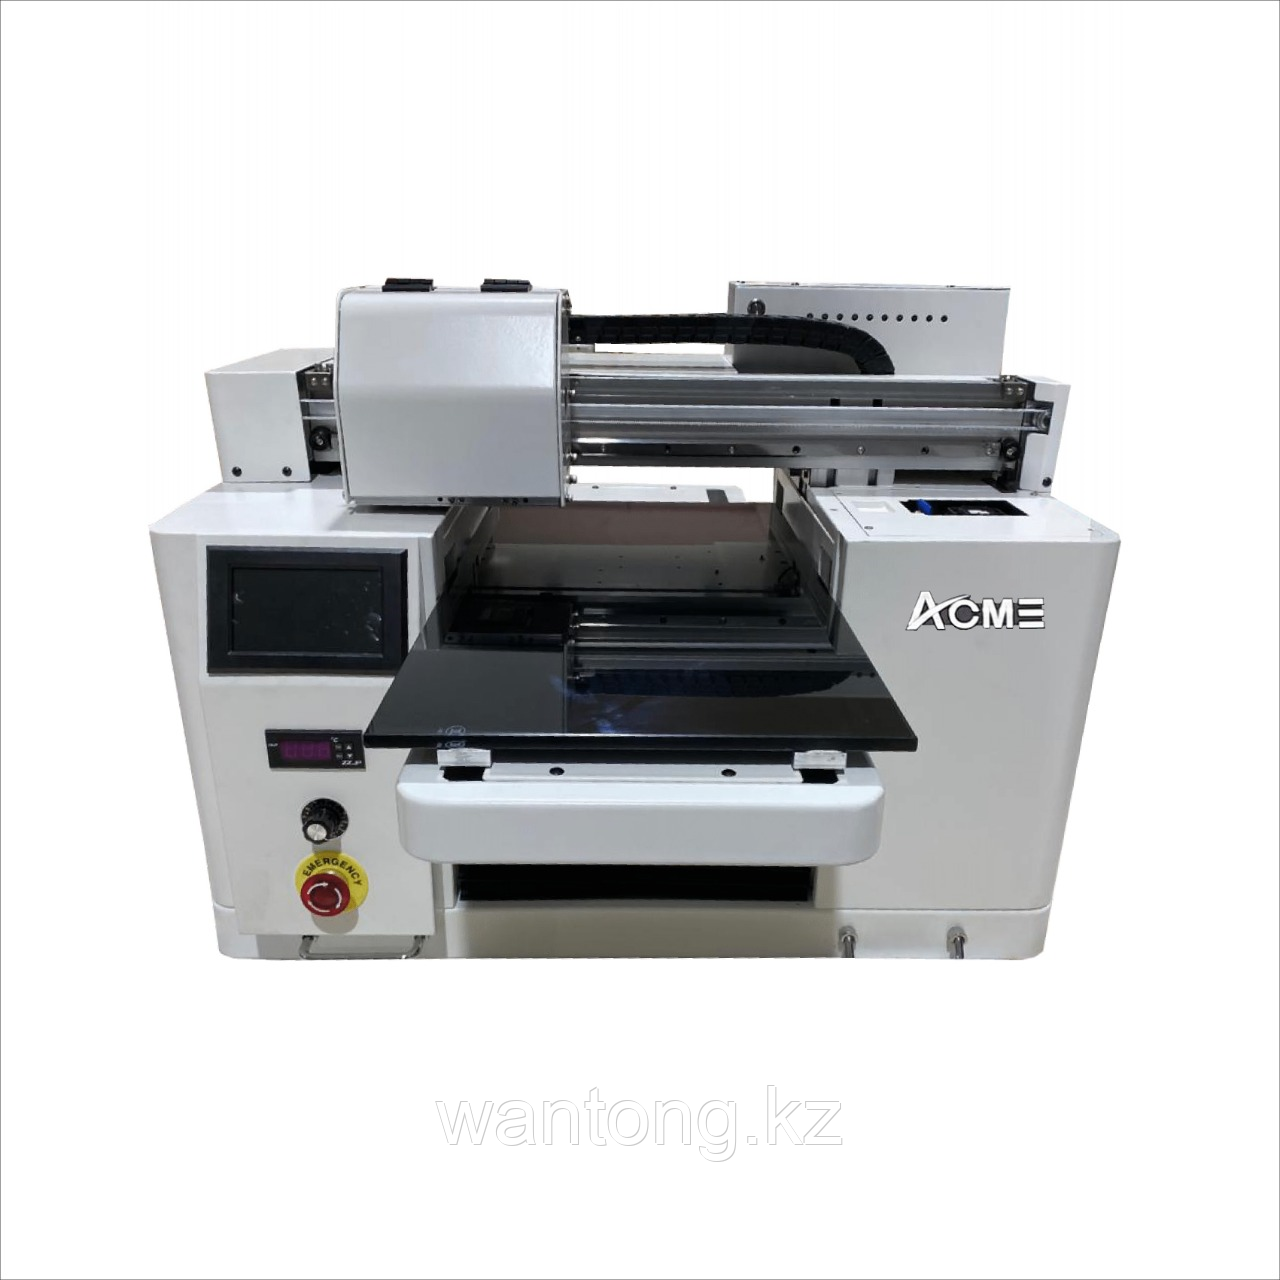 Широкоформатный уф принтер ACME3045 (A3 UV), фото 1